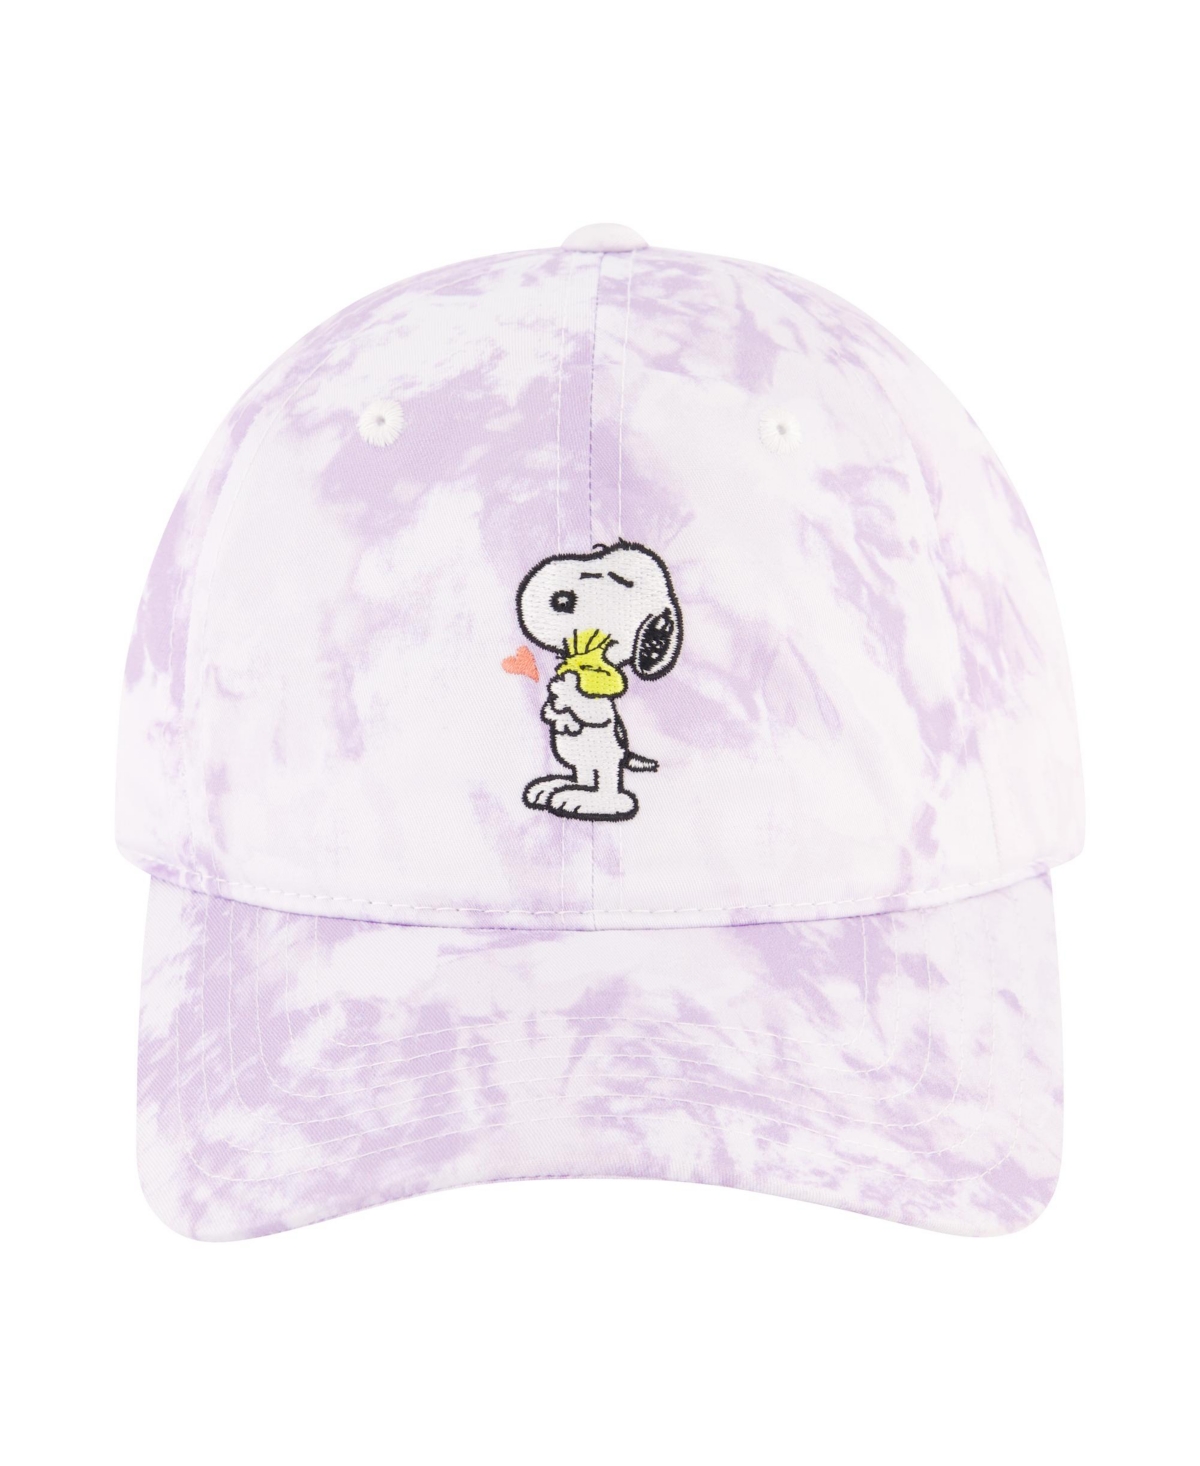 Snoopy Woodstock Hug Tie Dye Dad Cap - White/purple